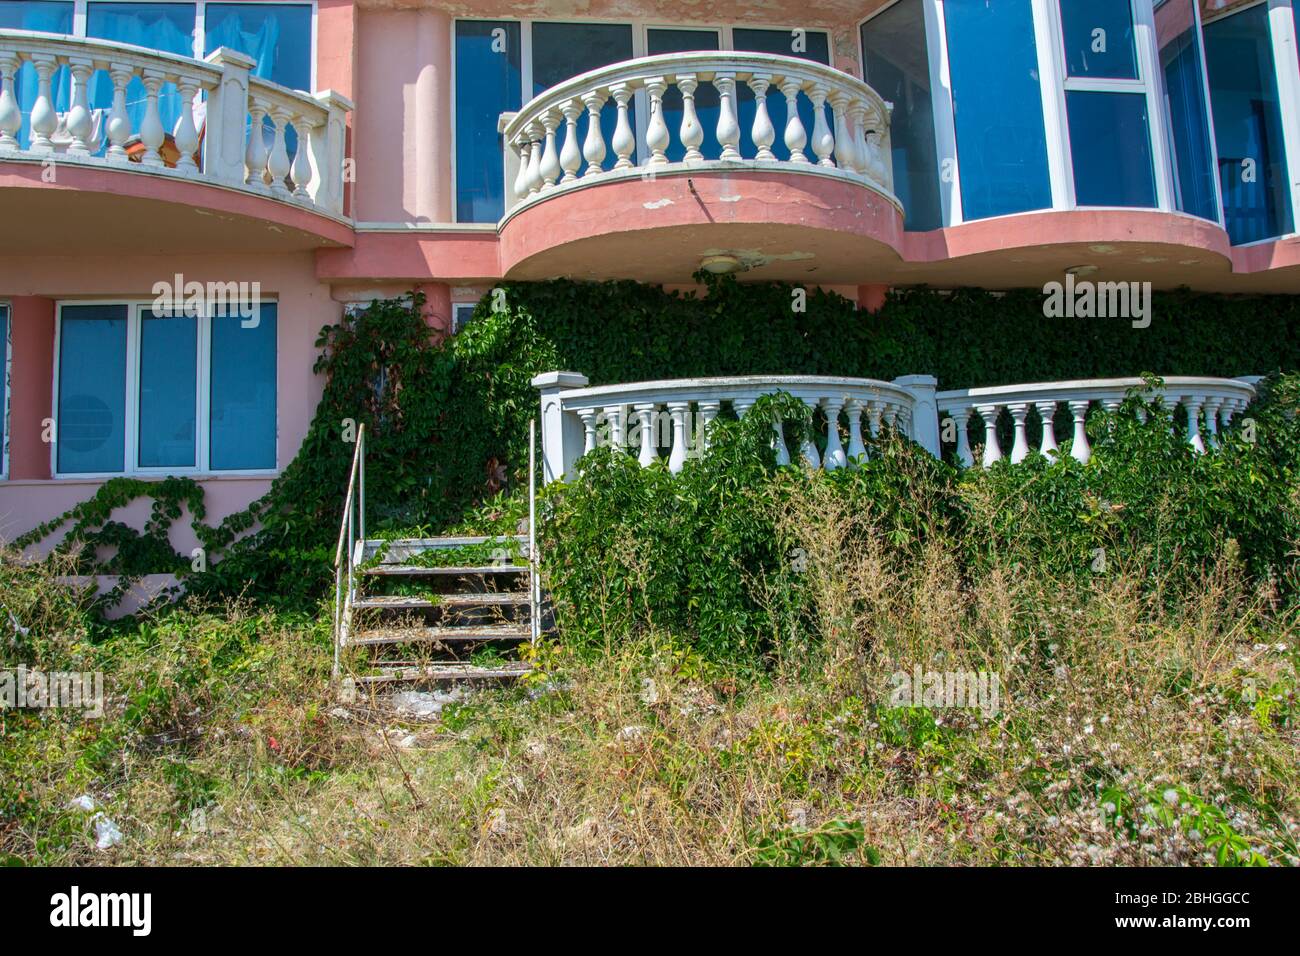 Verlassene Hotel am Strand, mit grünem Gras und kletternden Efeu Pflanze bedeckt, die Natur übernehmen Konzept, Gebäude Fassade Stockfoto